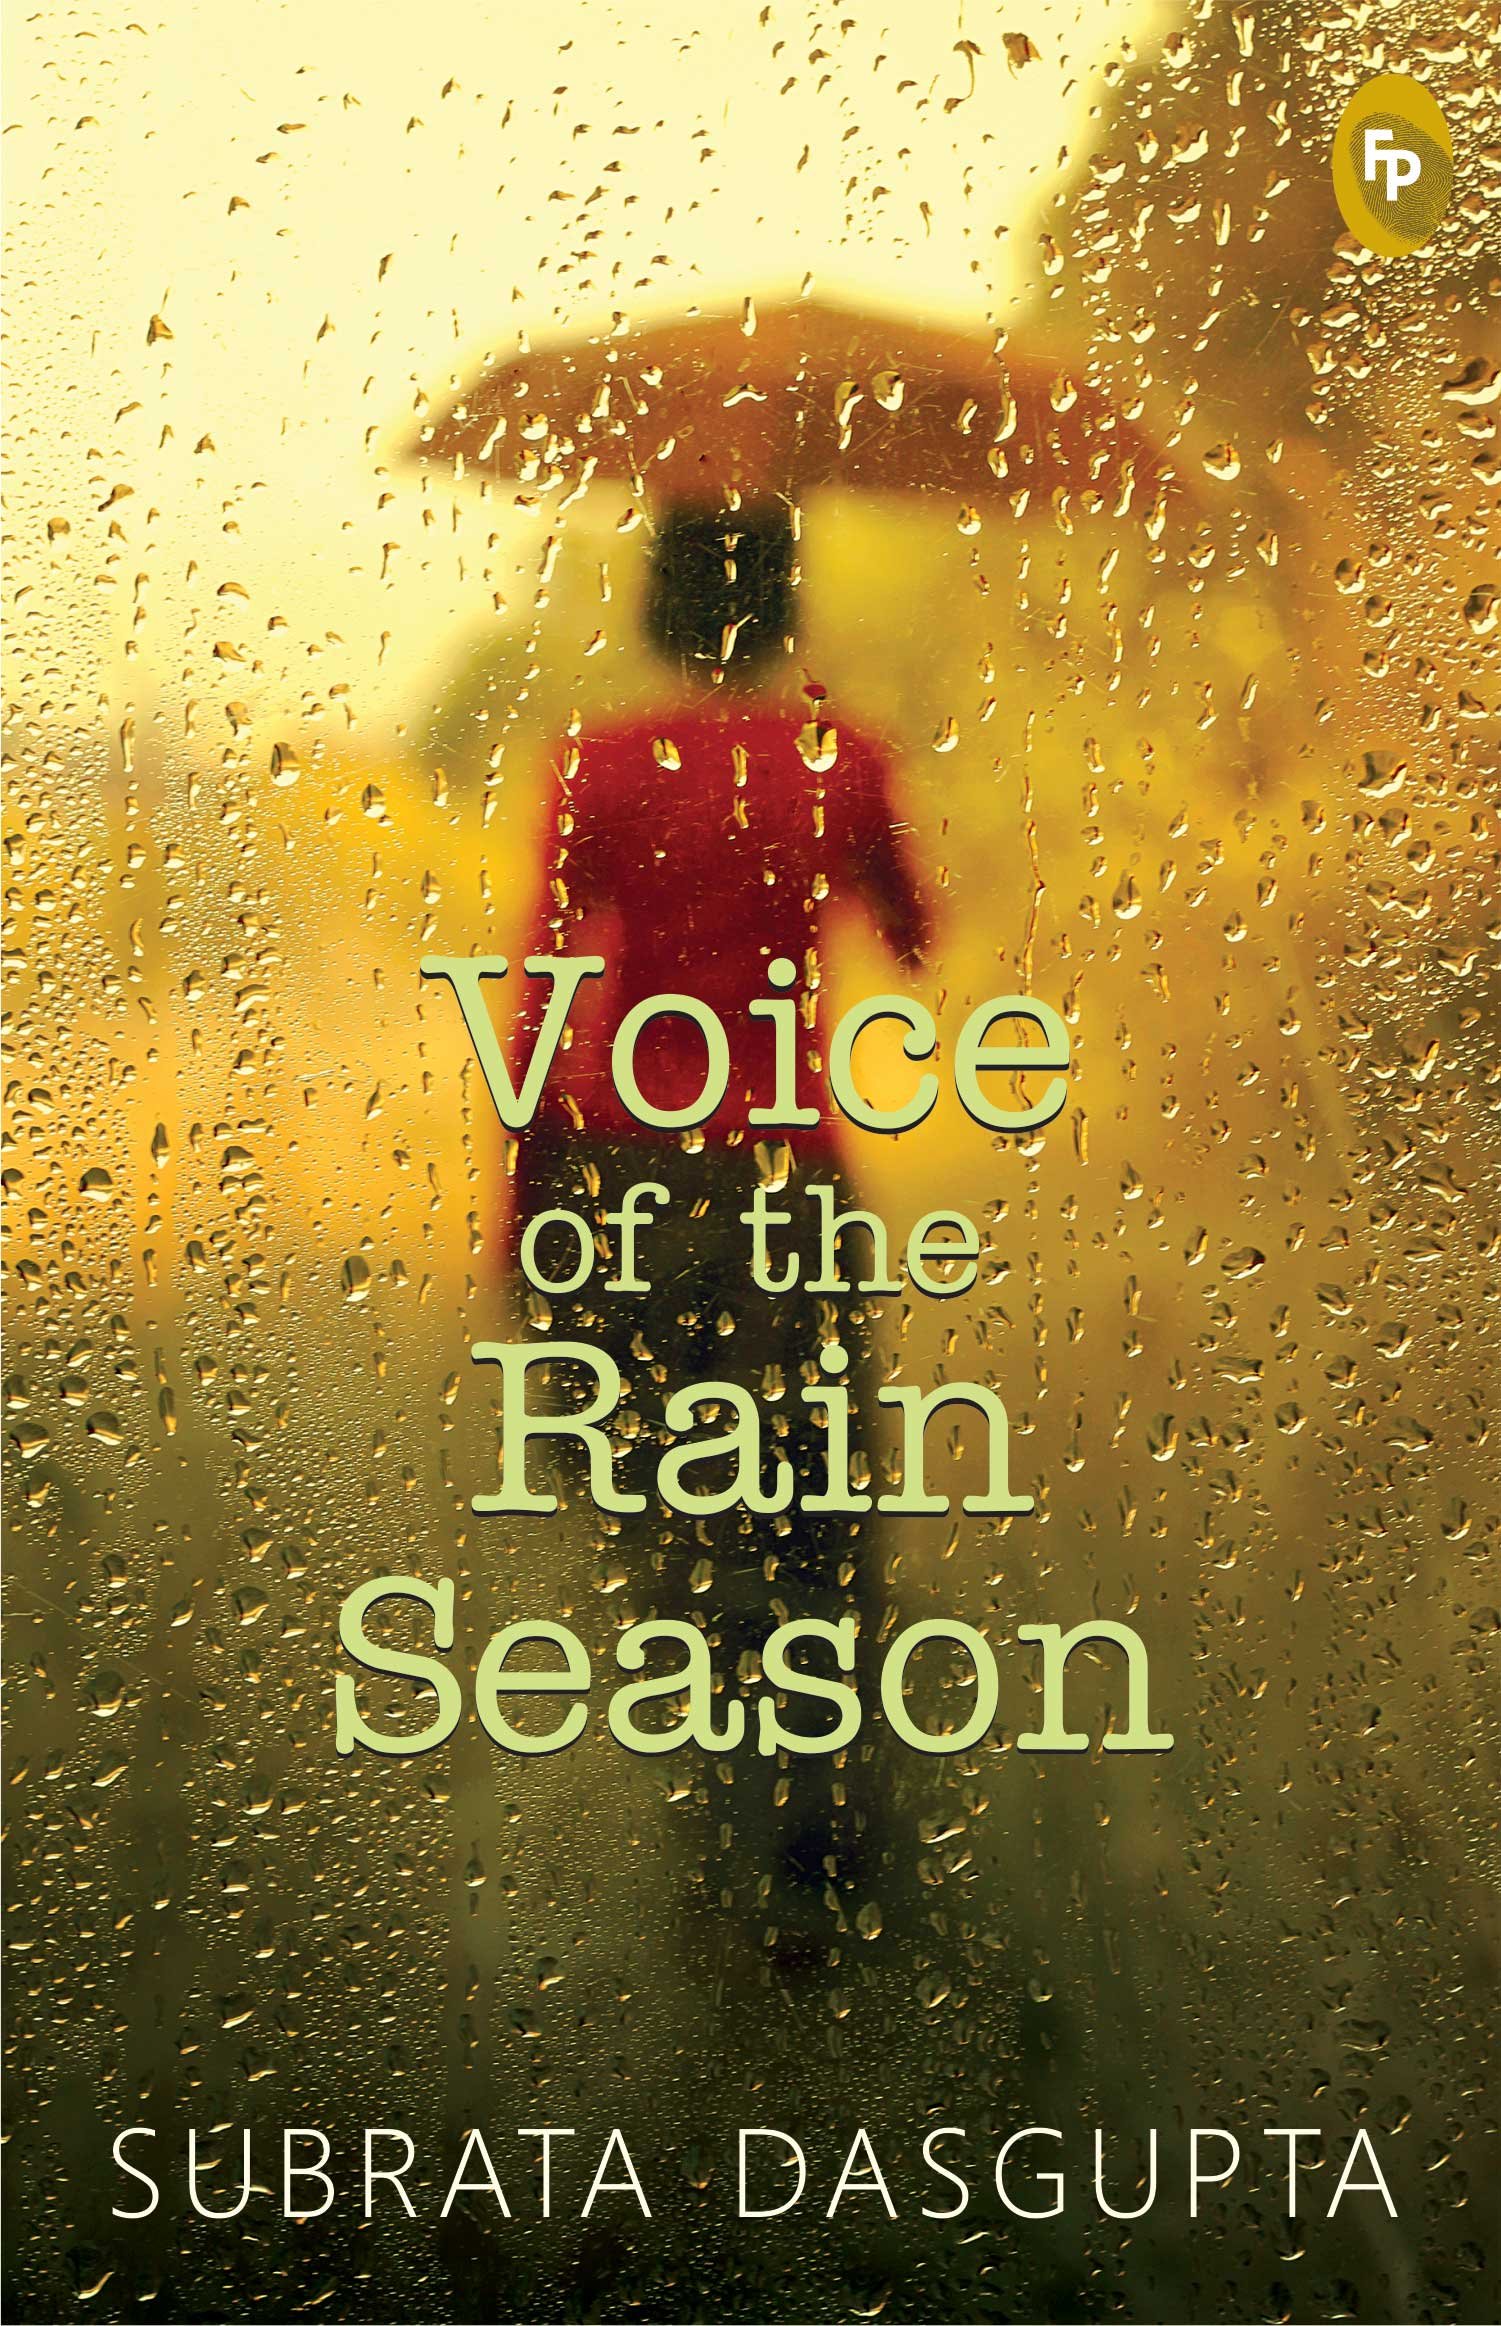 Voice of the rain season